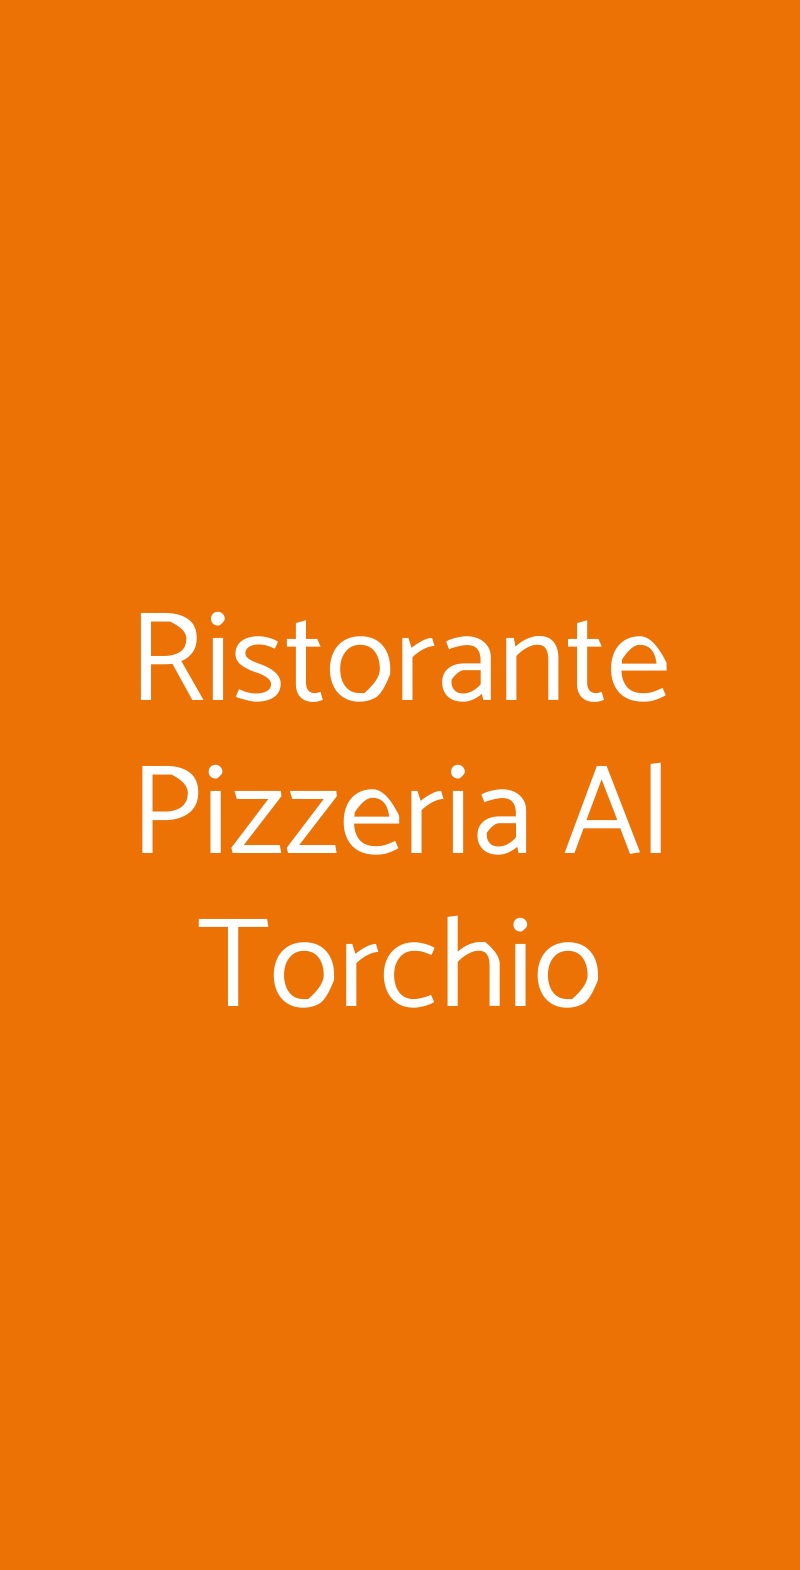 Ristorante Pizzeria Al Torchio Lazise menù 1 pagina